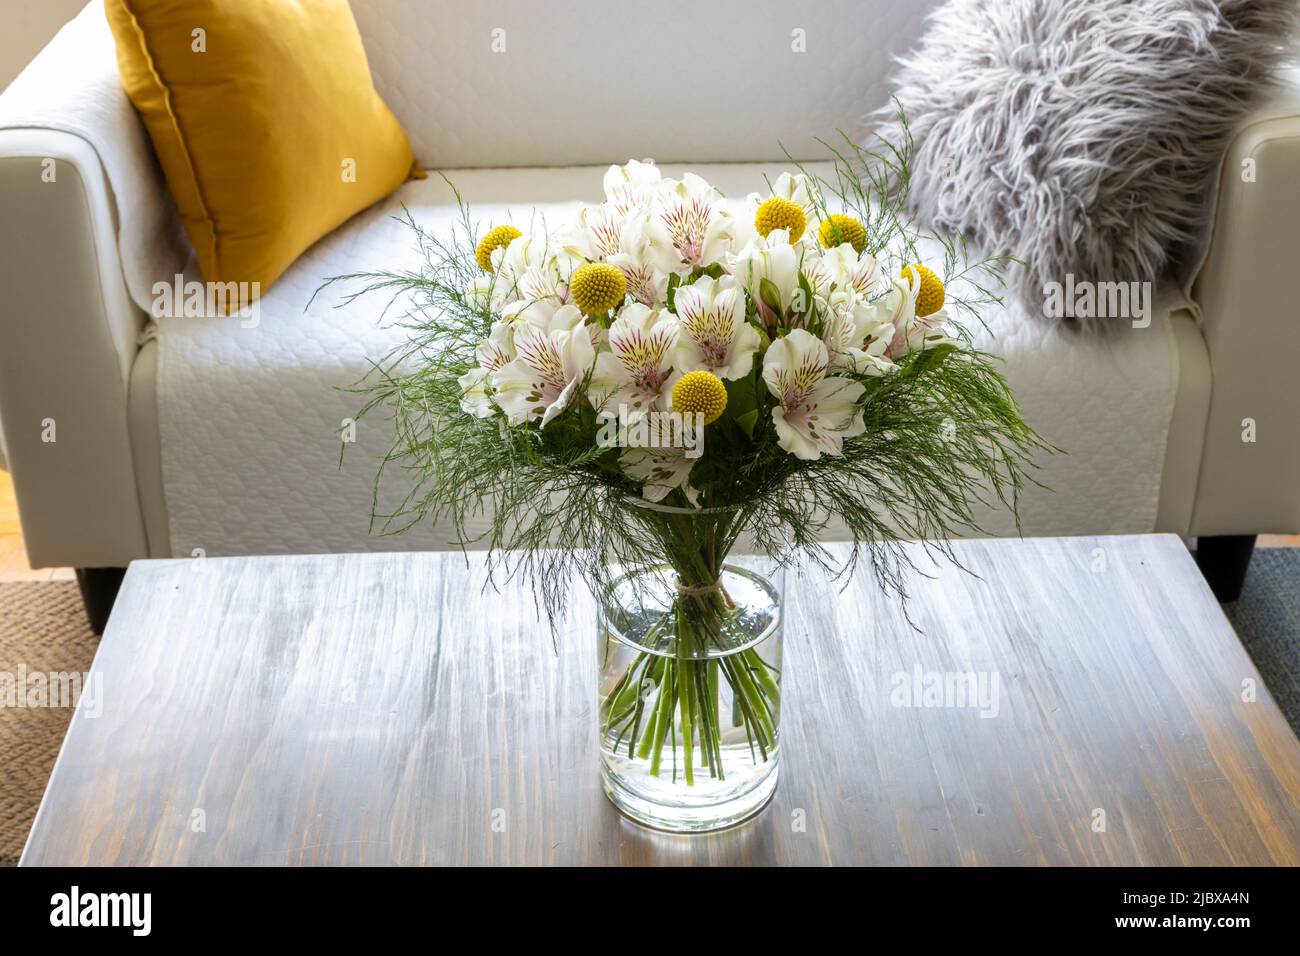 Crassedia e fiori di alstroemeria in vaso su un tavolino da caffè Foto Stock